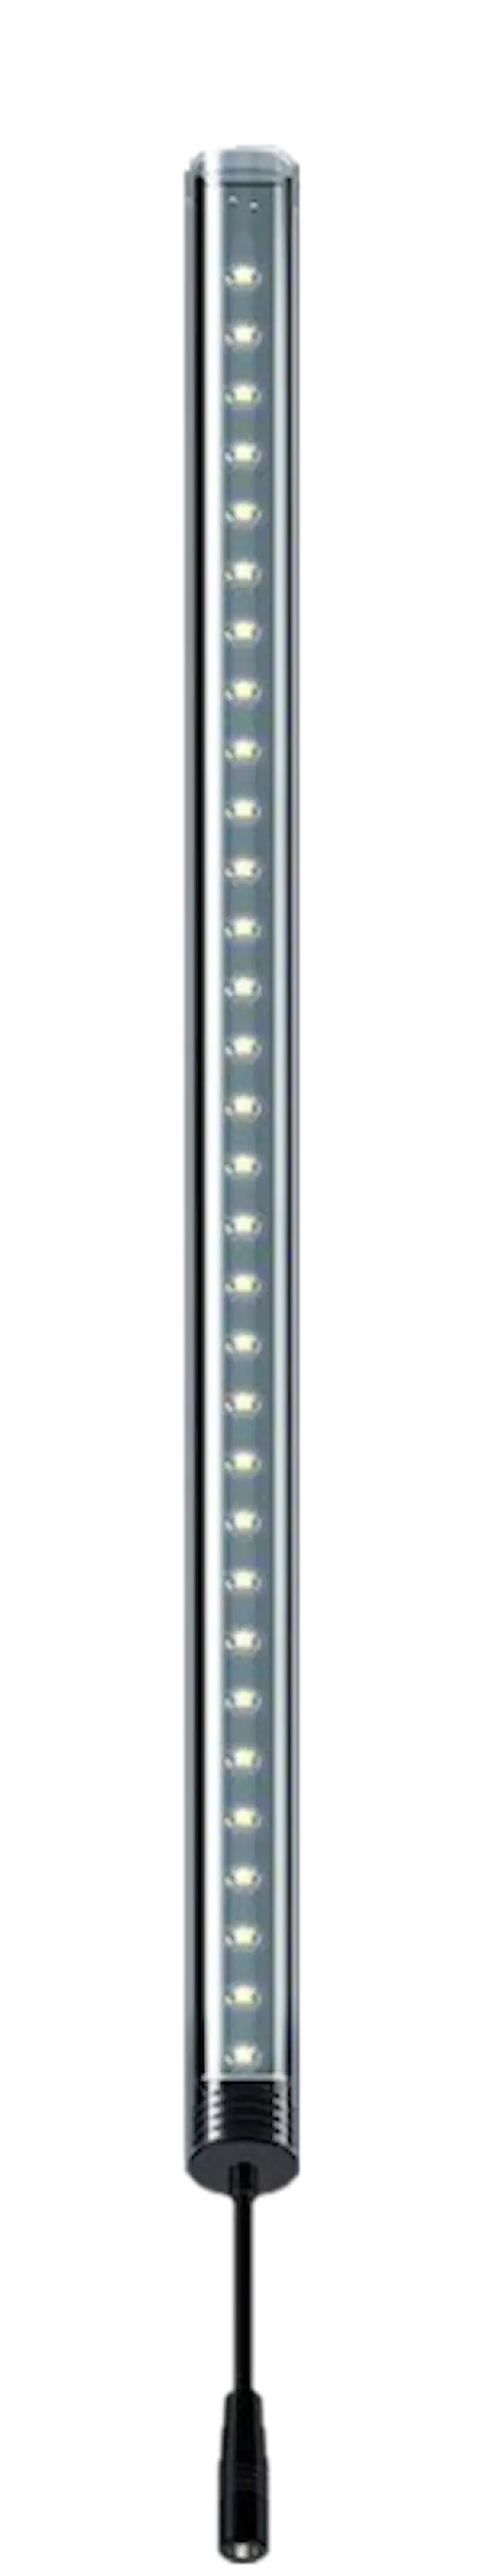 LightWave LED komplett sett, 830 - 910 mm